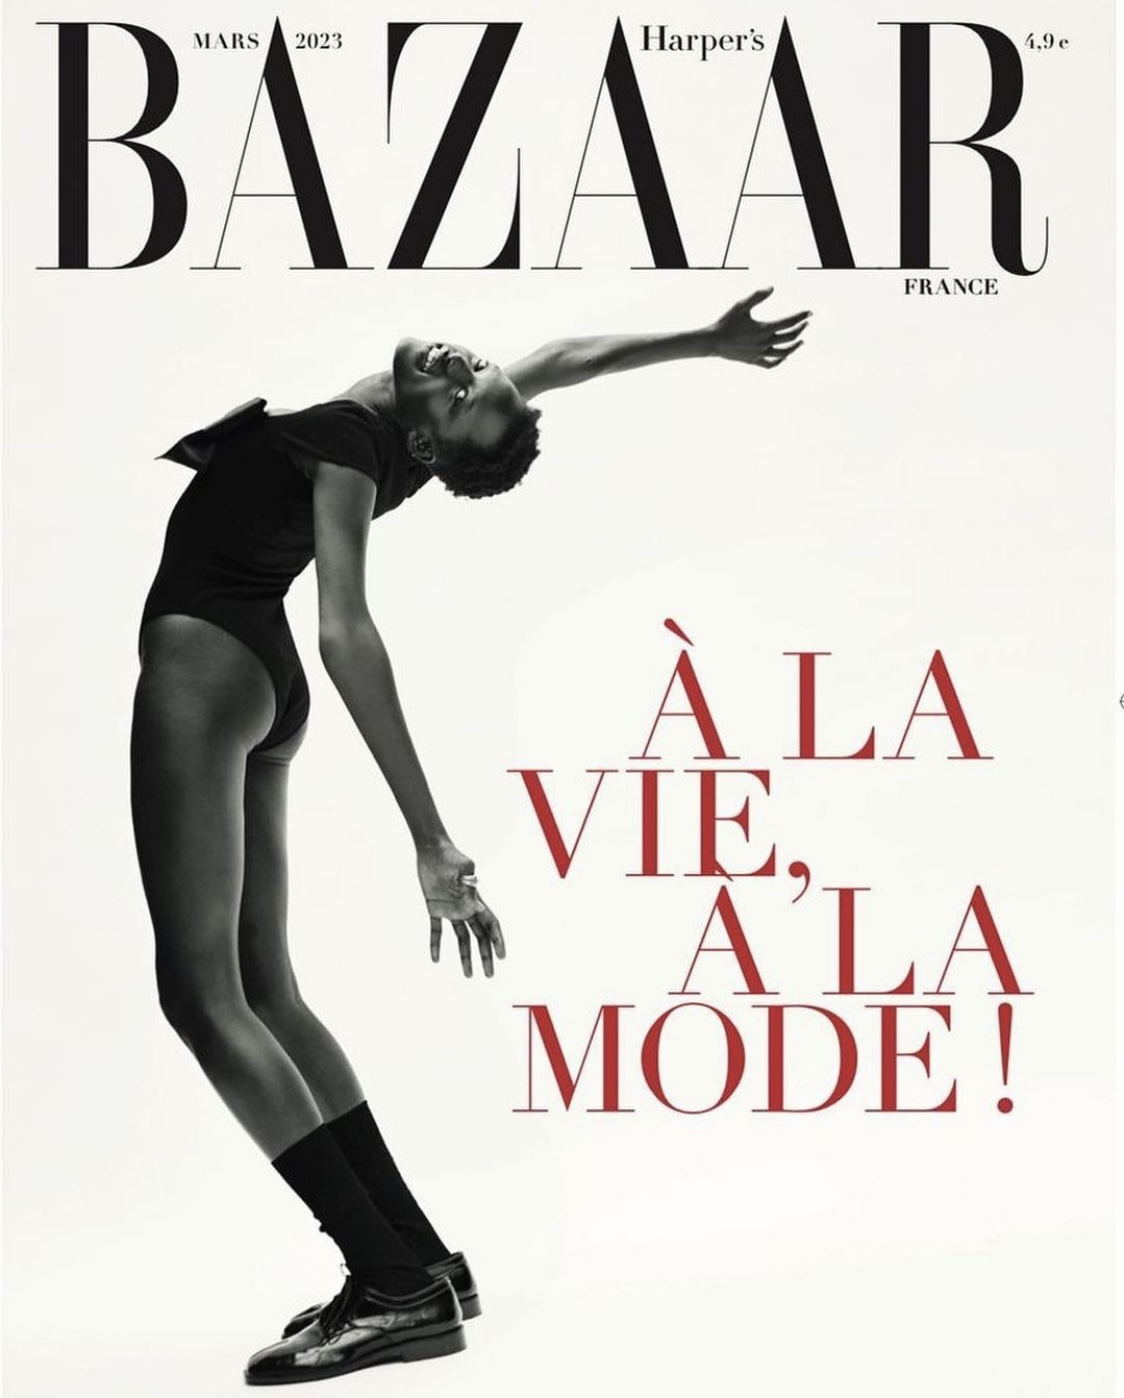 200612 - Twitter Update - TWICE & Harper's BAZAAR & Louis Vuitton (Harper's  BAZAAR July edition) : r/twice